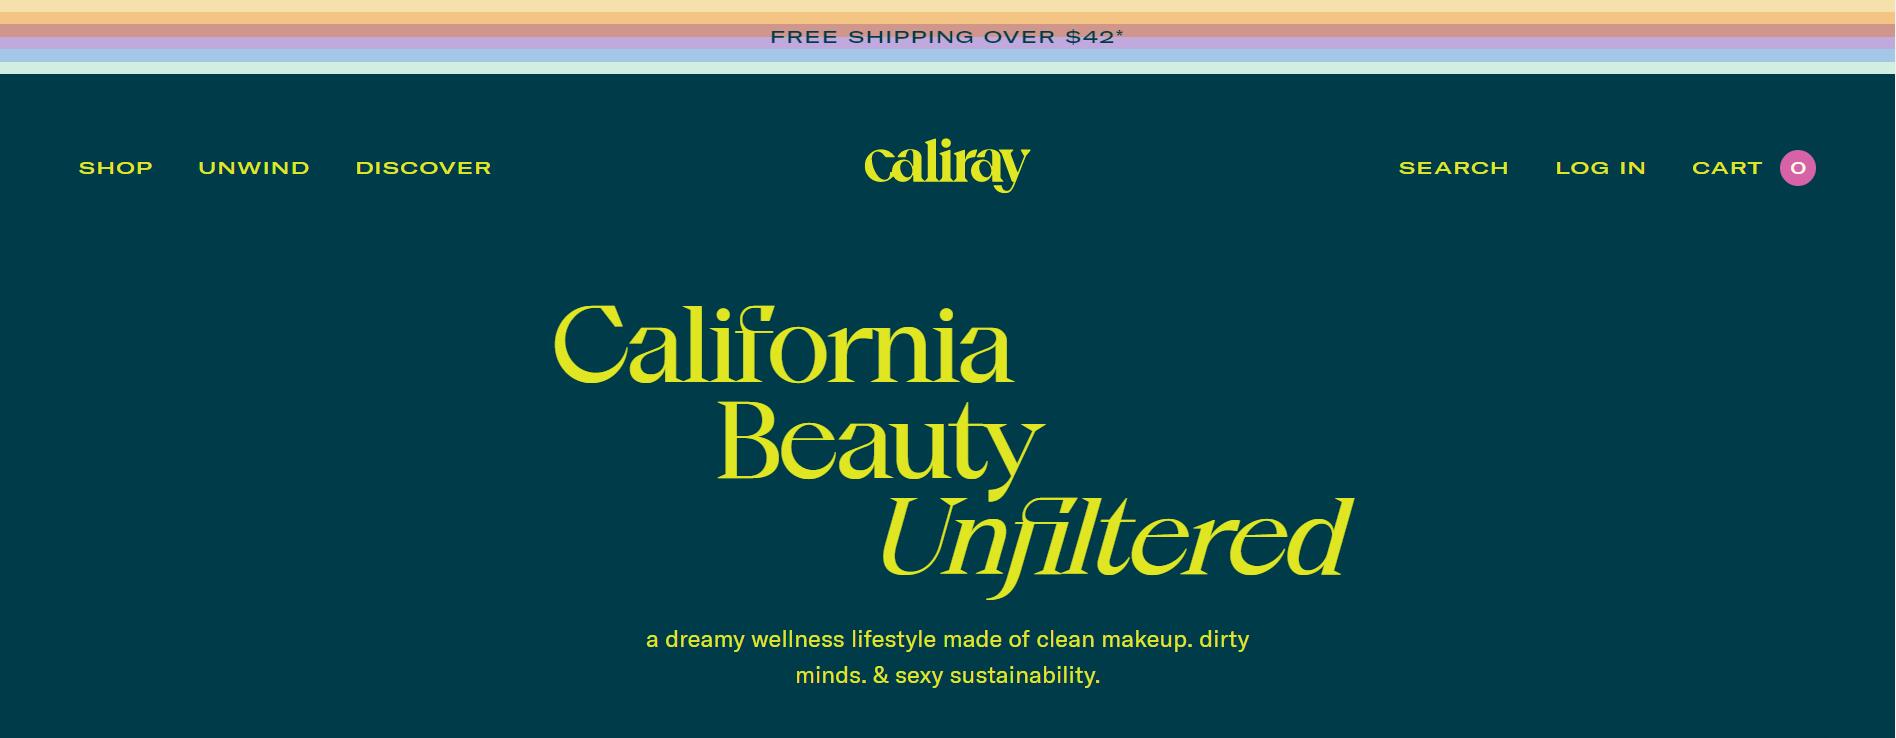 Urban Decay 联合创始人二次创业的美妆品牌 Caliray 完成A轮融资